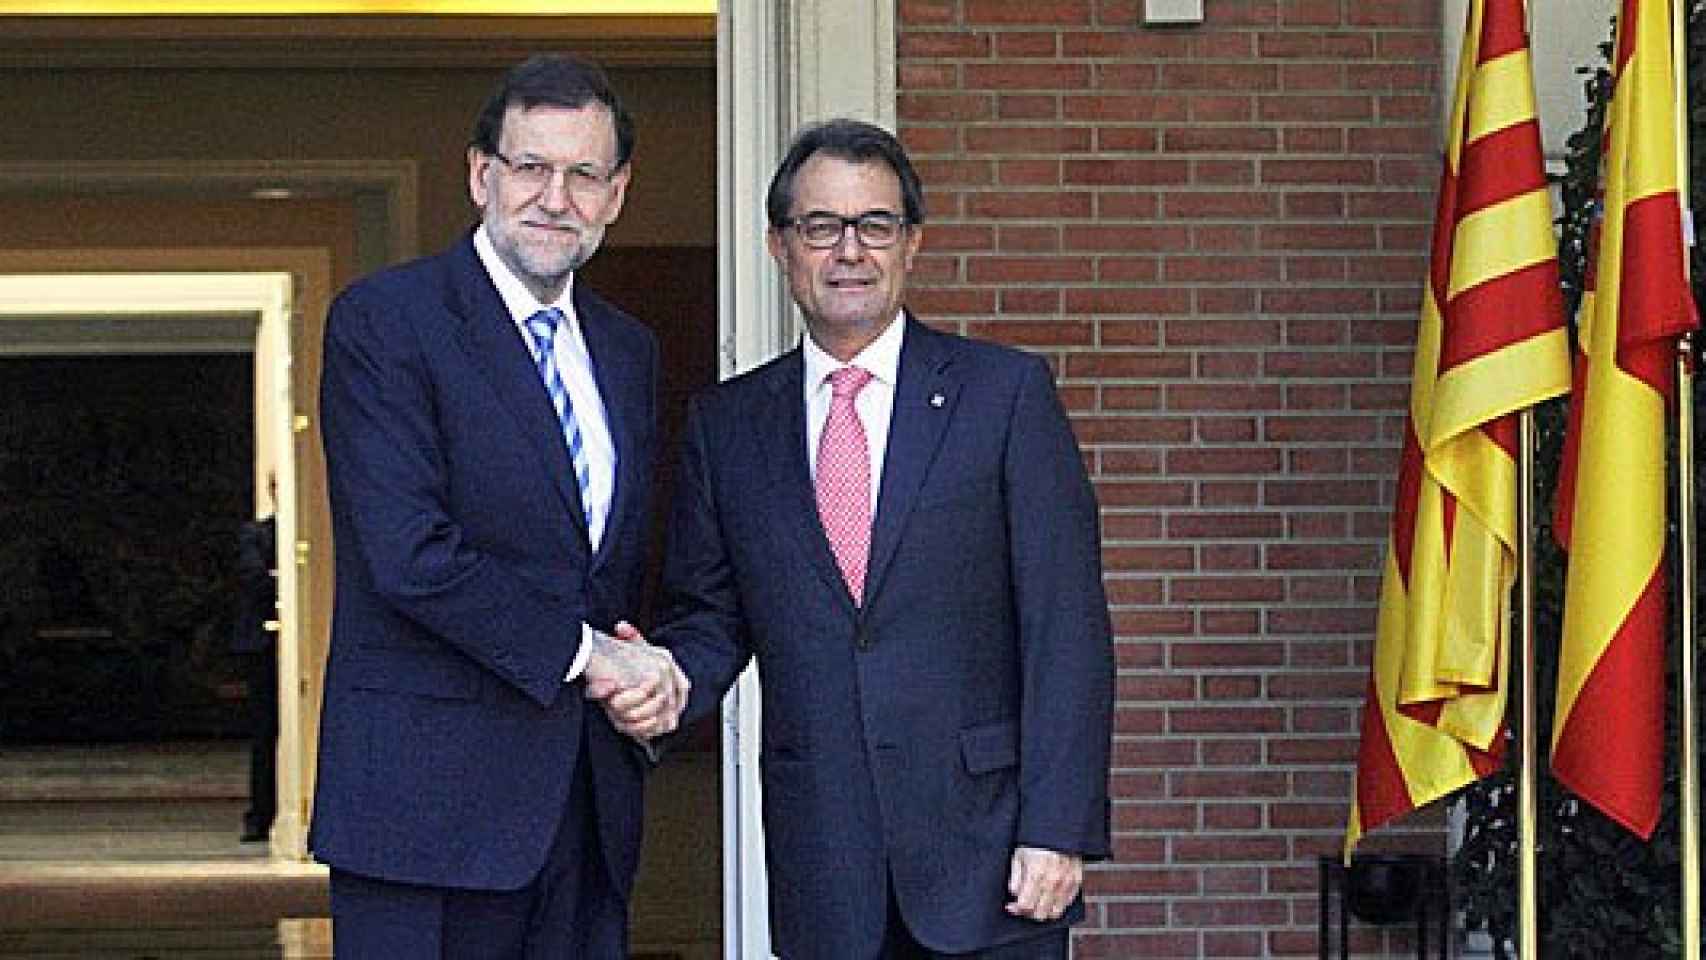 El presidente del Gobierno, Mariano Rajoy, recibe al presidente de la Generalidad, Artur Mas, en la Moncloa